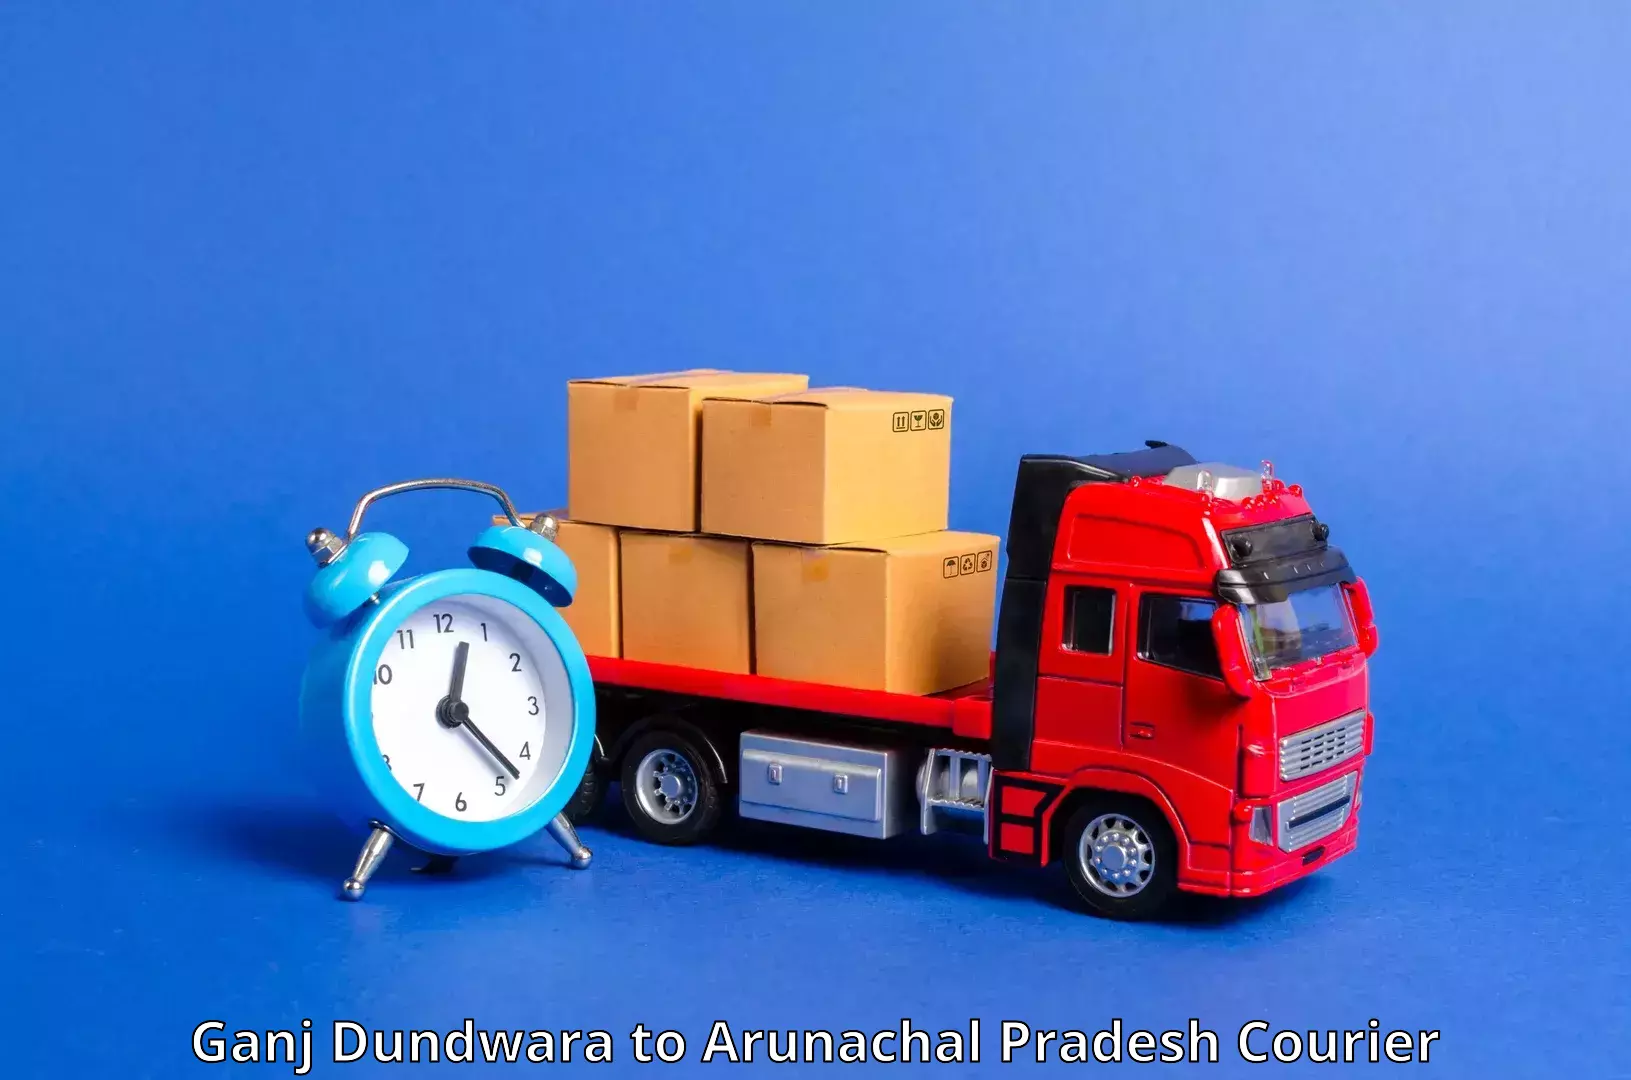 Efficient parcel delivery Ganj Dundwara to Dibang Valley